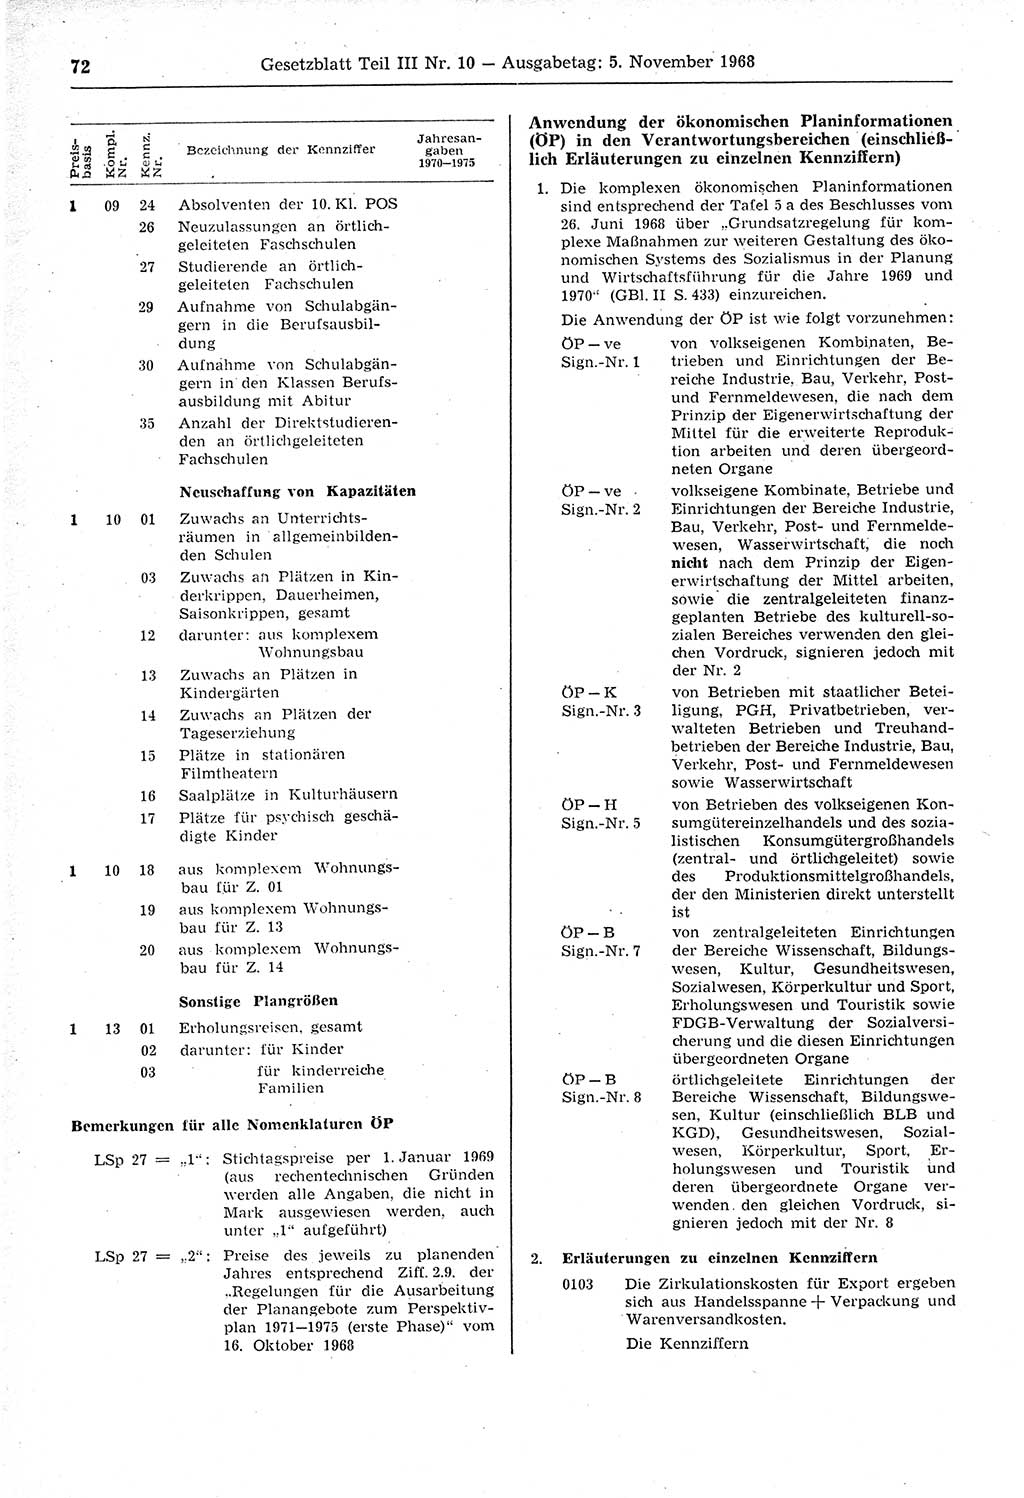 Gesetzblatt (GBl.) der Deutschen Demokratischen Republik (DDR) Teil ⅠⅠⅠ 1968, Seite 72 (GBl. DDR ⅠⅠⅠ 1968, S. 72)